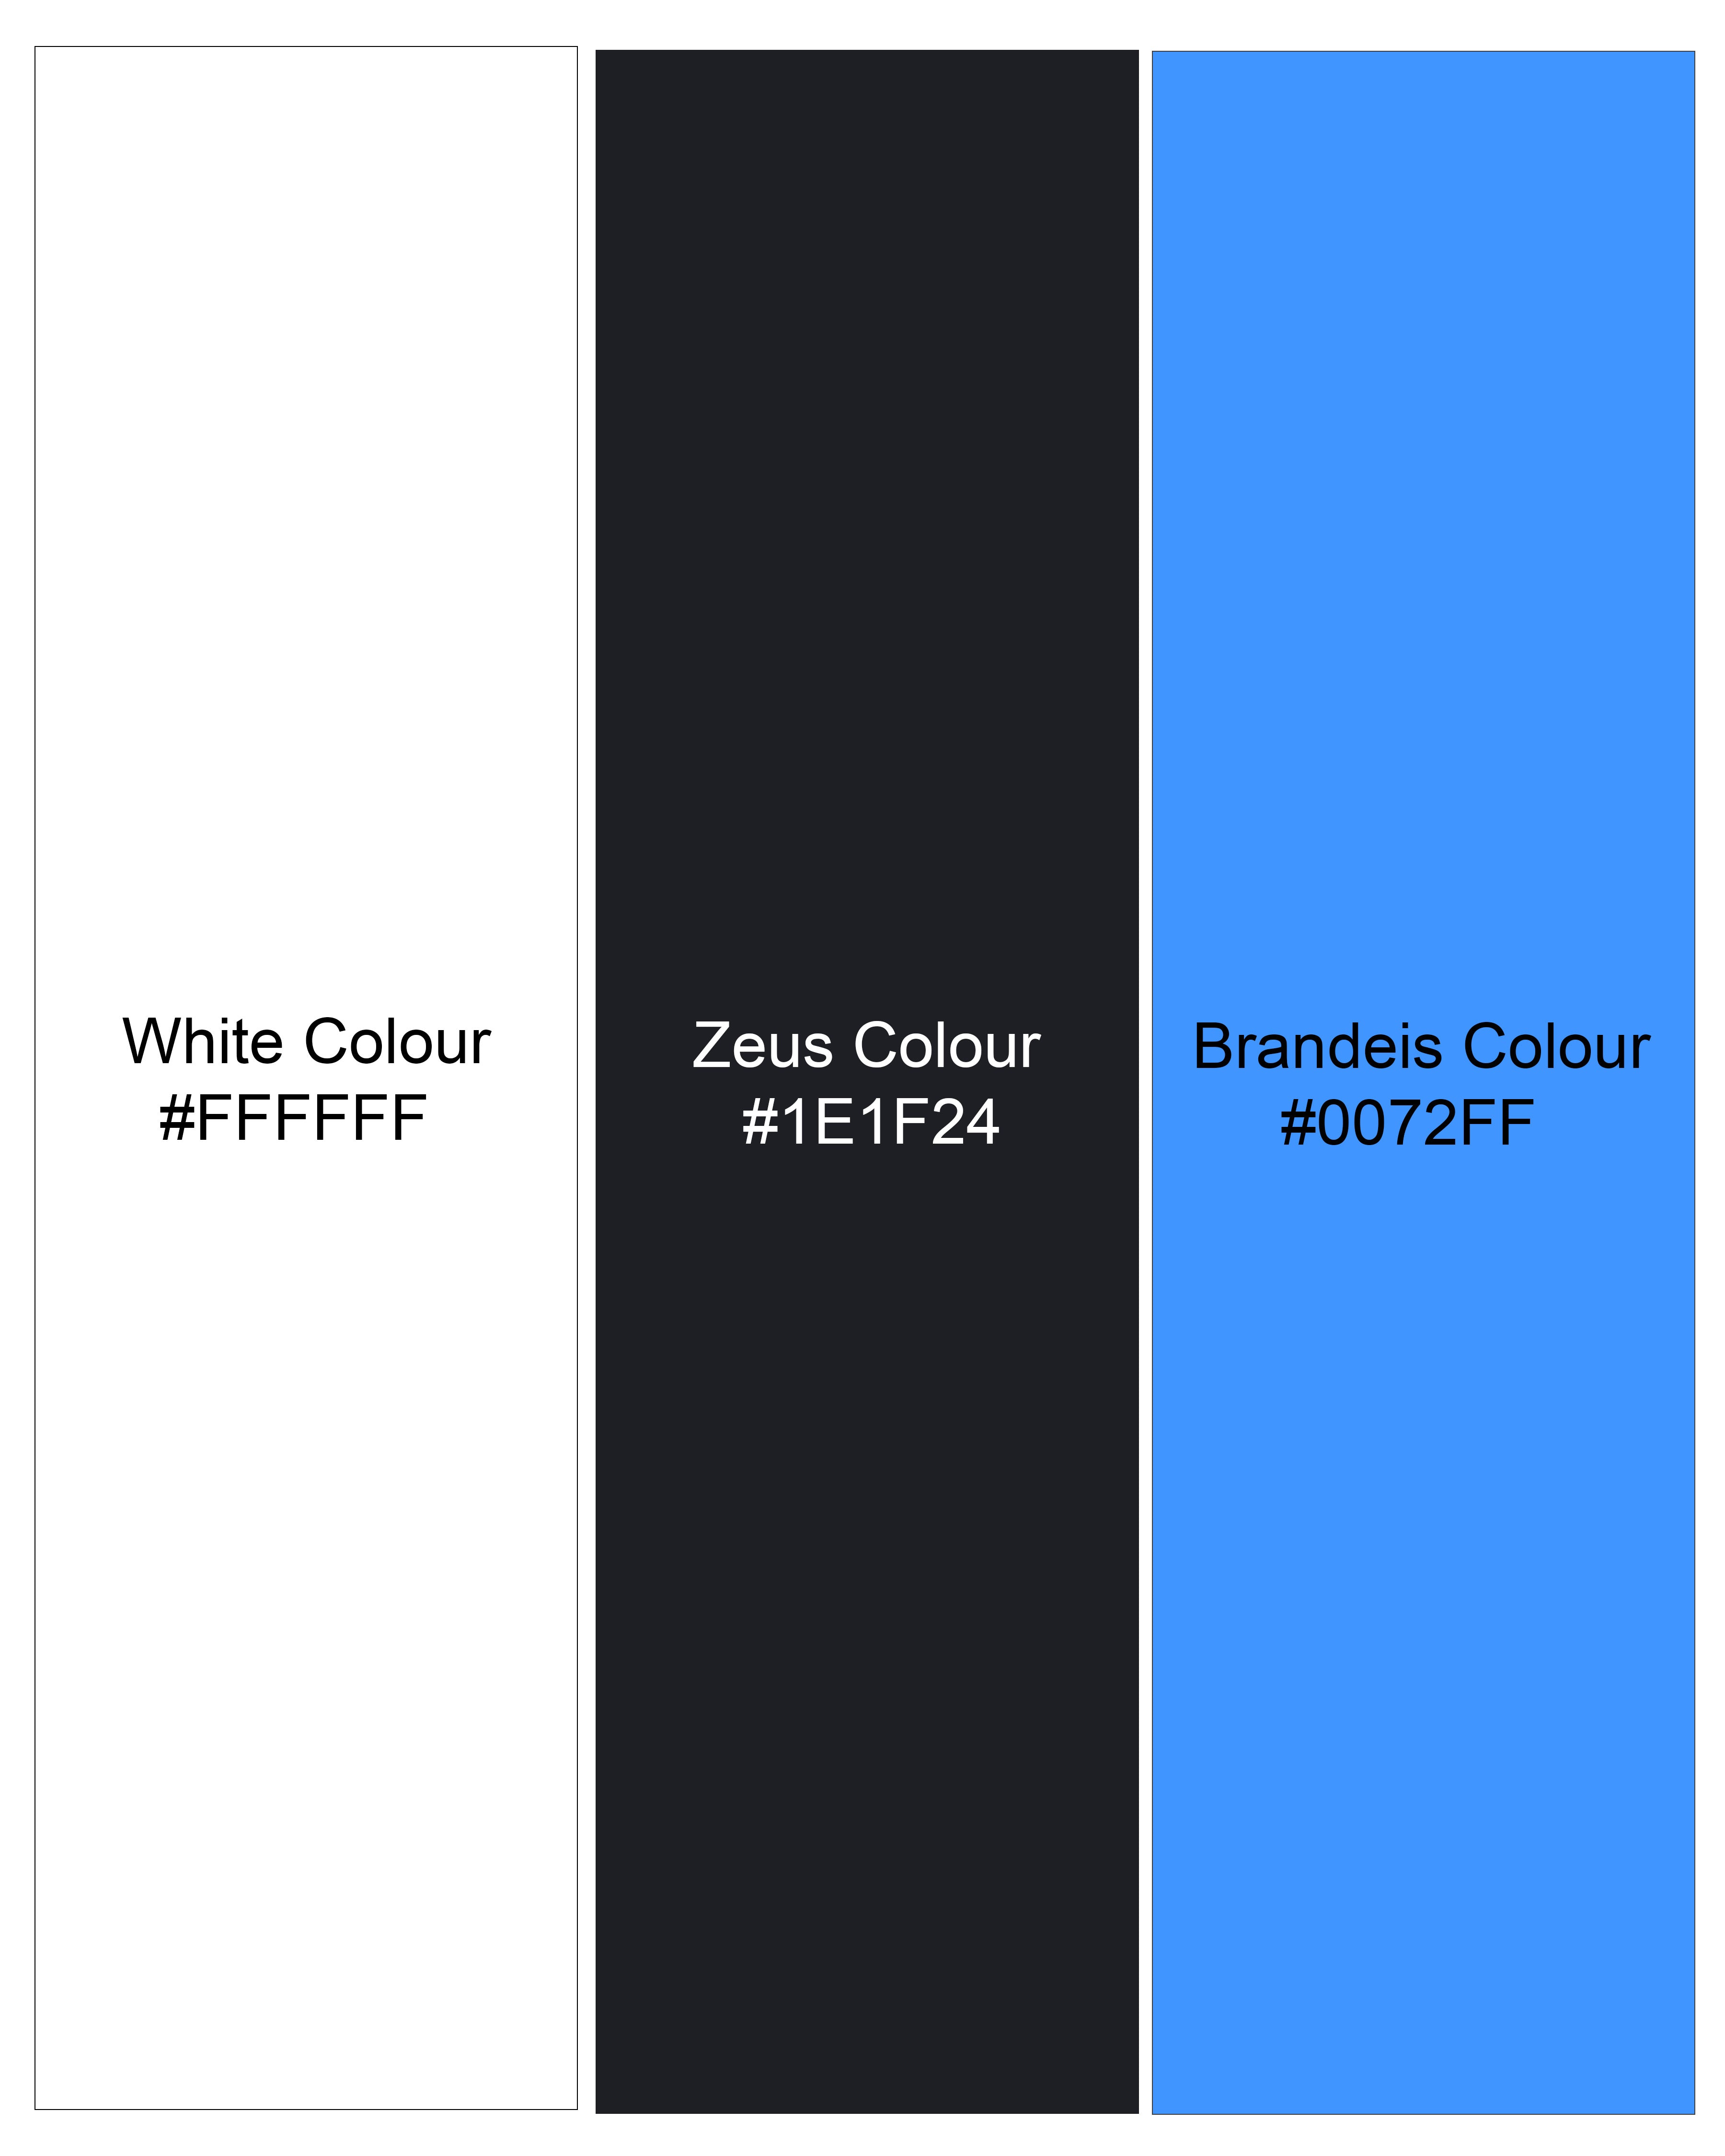 Bright White with Zeus Black and Brandeis Blue Plaid Flannel Overshirt 9229-OS-P131-38,9229-OS-P131-H-38,9229-OS-P131-39,9229-OS-P131-H-39,9229-OS-P131-40,9229-OS-P131-H-40,9229-OS-P131-42,9229-OS-P131-H-42,9229-OS-P131-44,9229-OS-P131-H-44,9229-OS-P131-46,9229-OS-P131-H-46,9229-OS-P131-48,9229-OS-P131-H-48,9229-OS-P131-50,9229-OS-P131-H-50,9229-OS-P131-52,9229-OS-P131-H-52